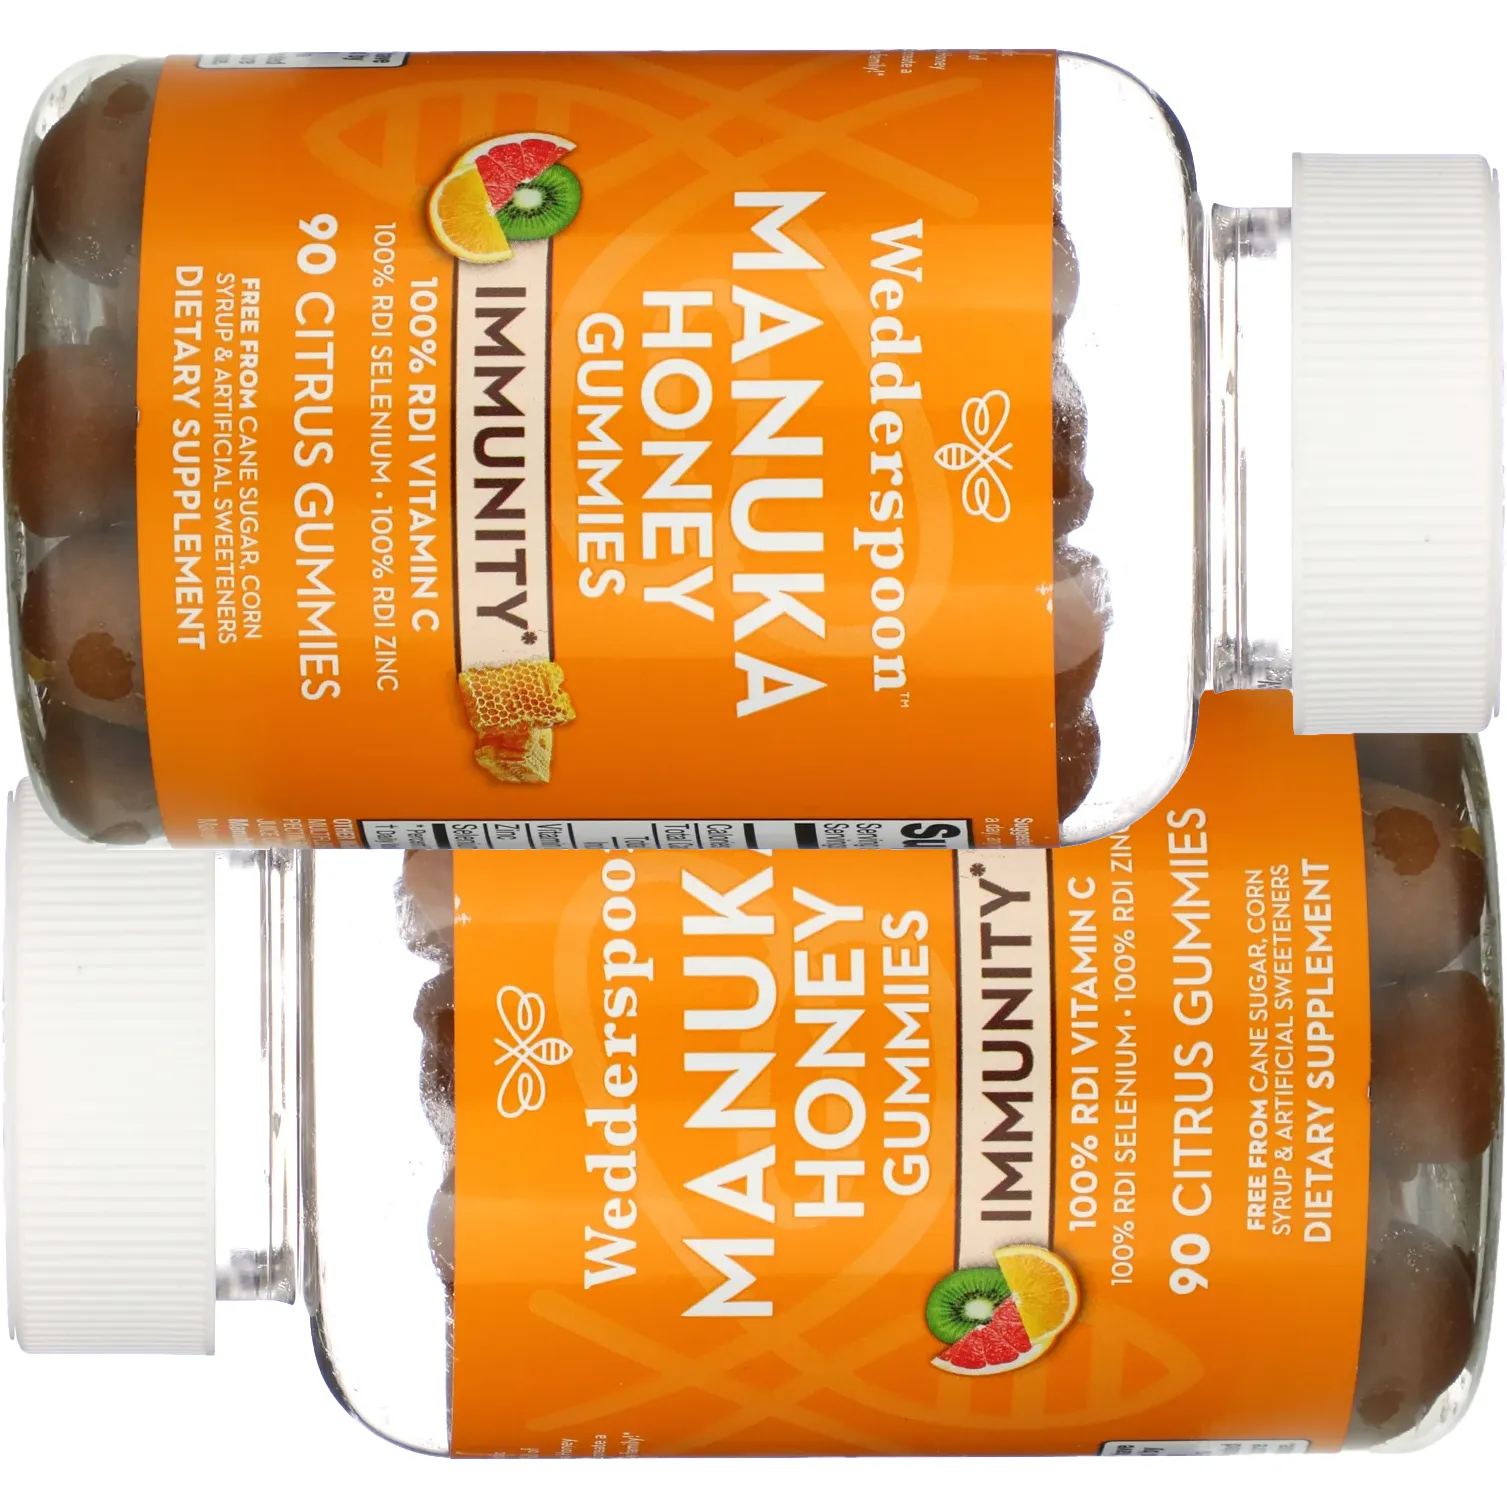 Free Manuka Honey Supplements